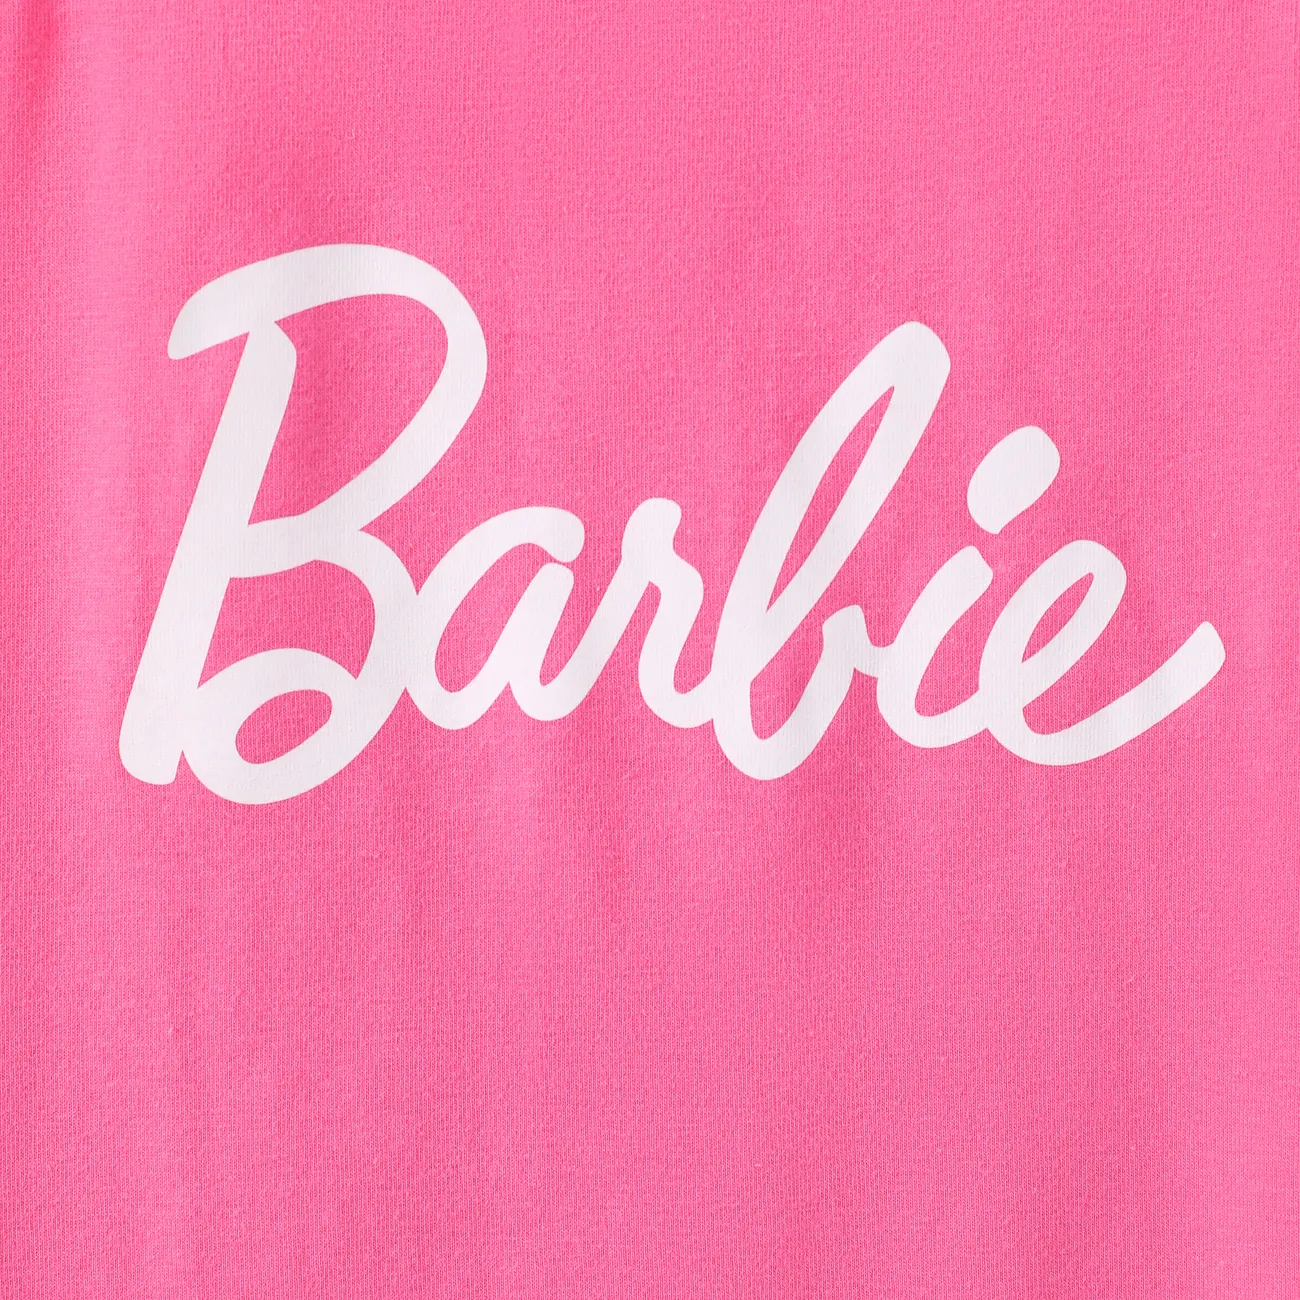 Barbie Día de la Madre IP Chica Dulce Vestidos Roseo big image 1